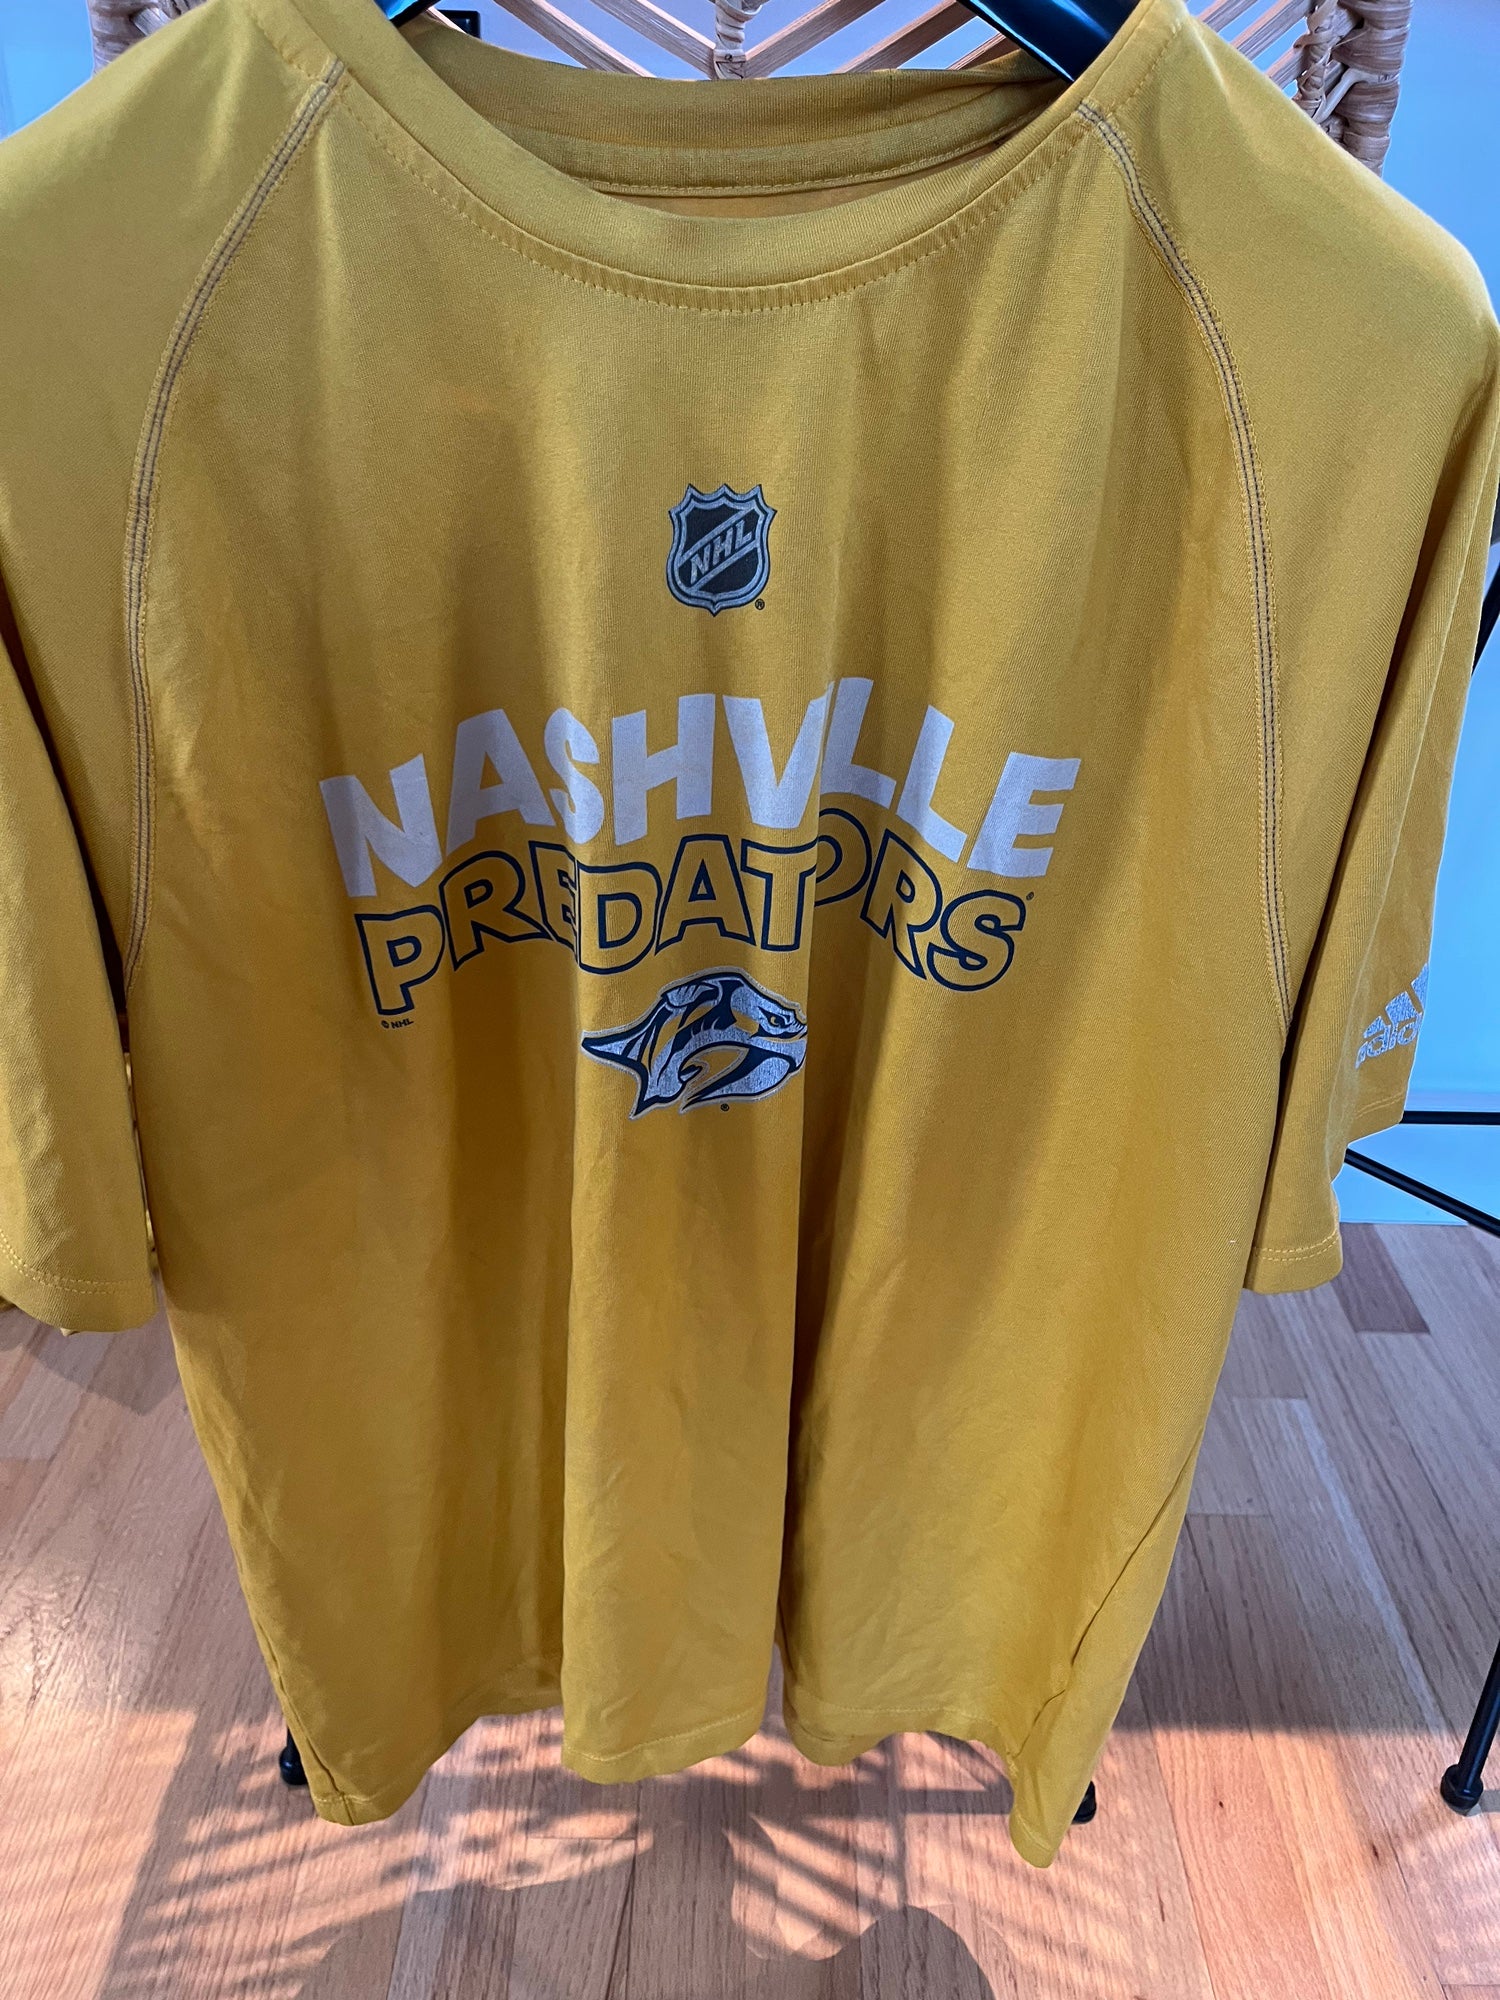 Nashville Predators T-Shirts in Nashville Predators Team Shop 